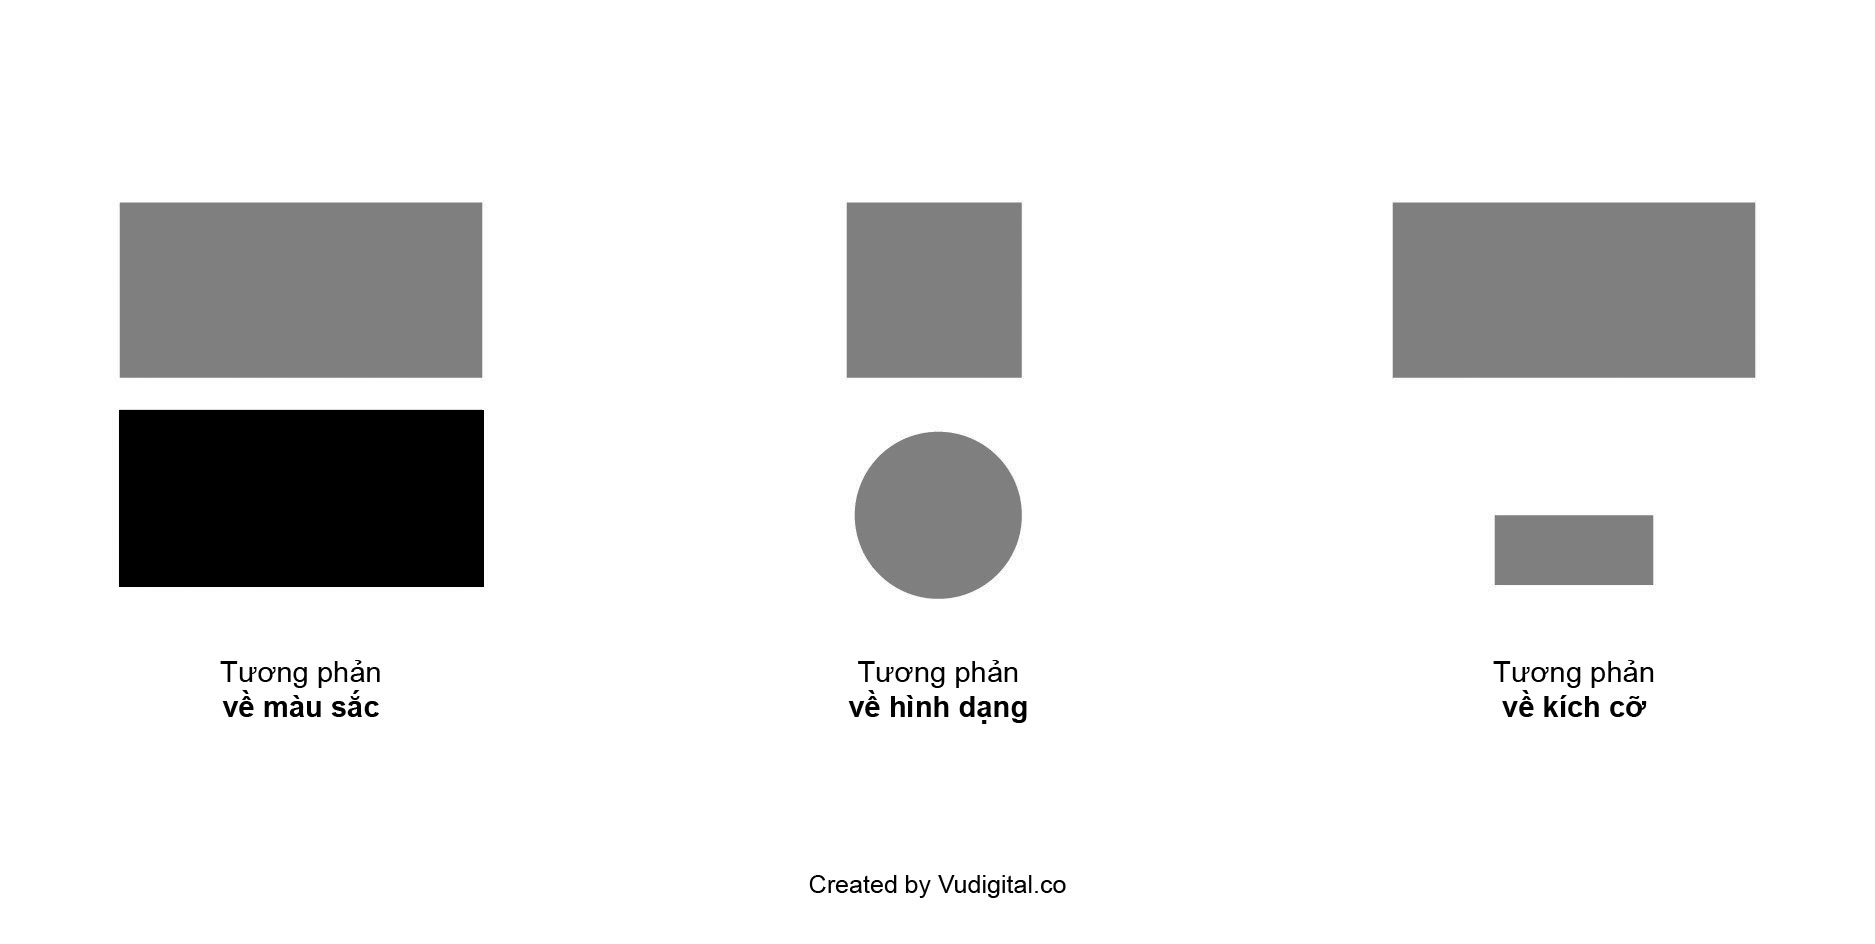 Các ví dụ về tương phản trong thiết kế (ảnh: vudigital.co)